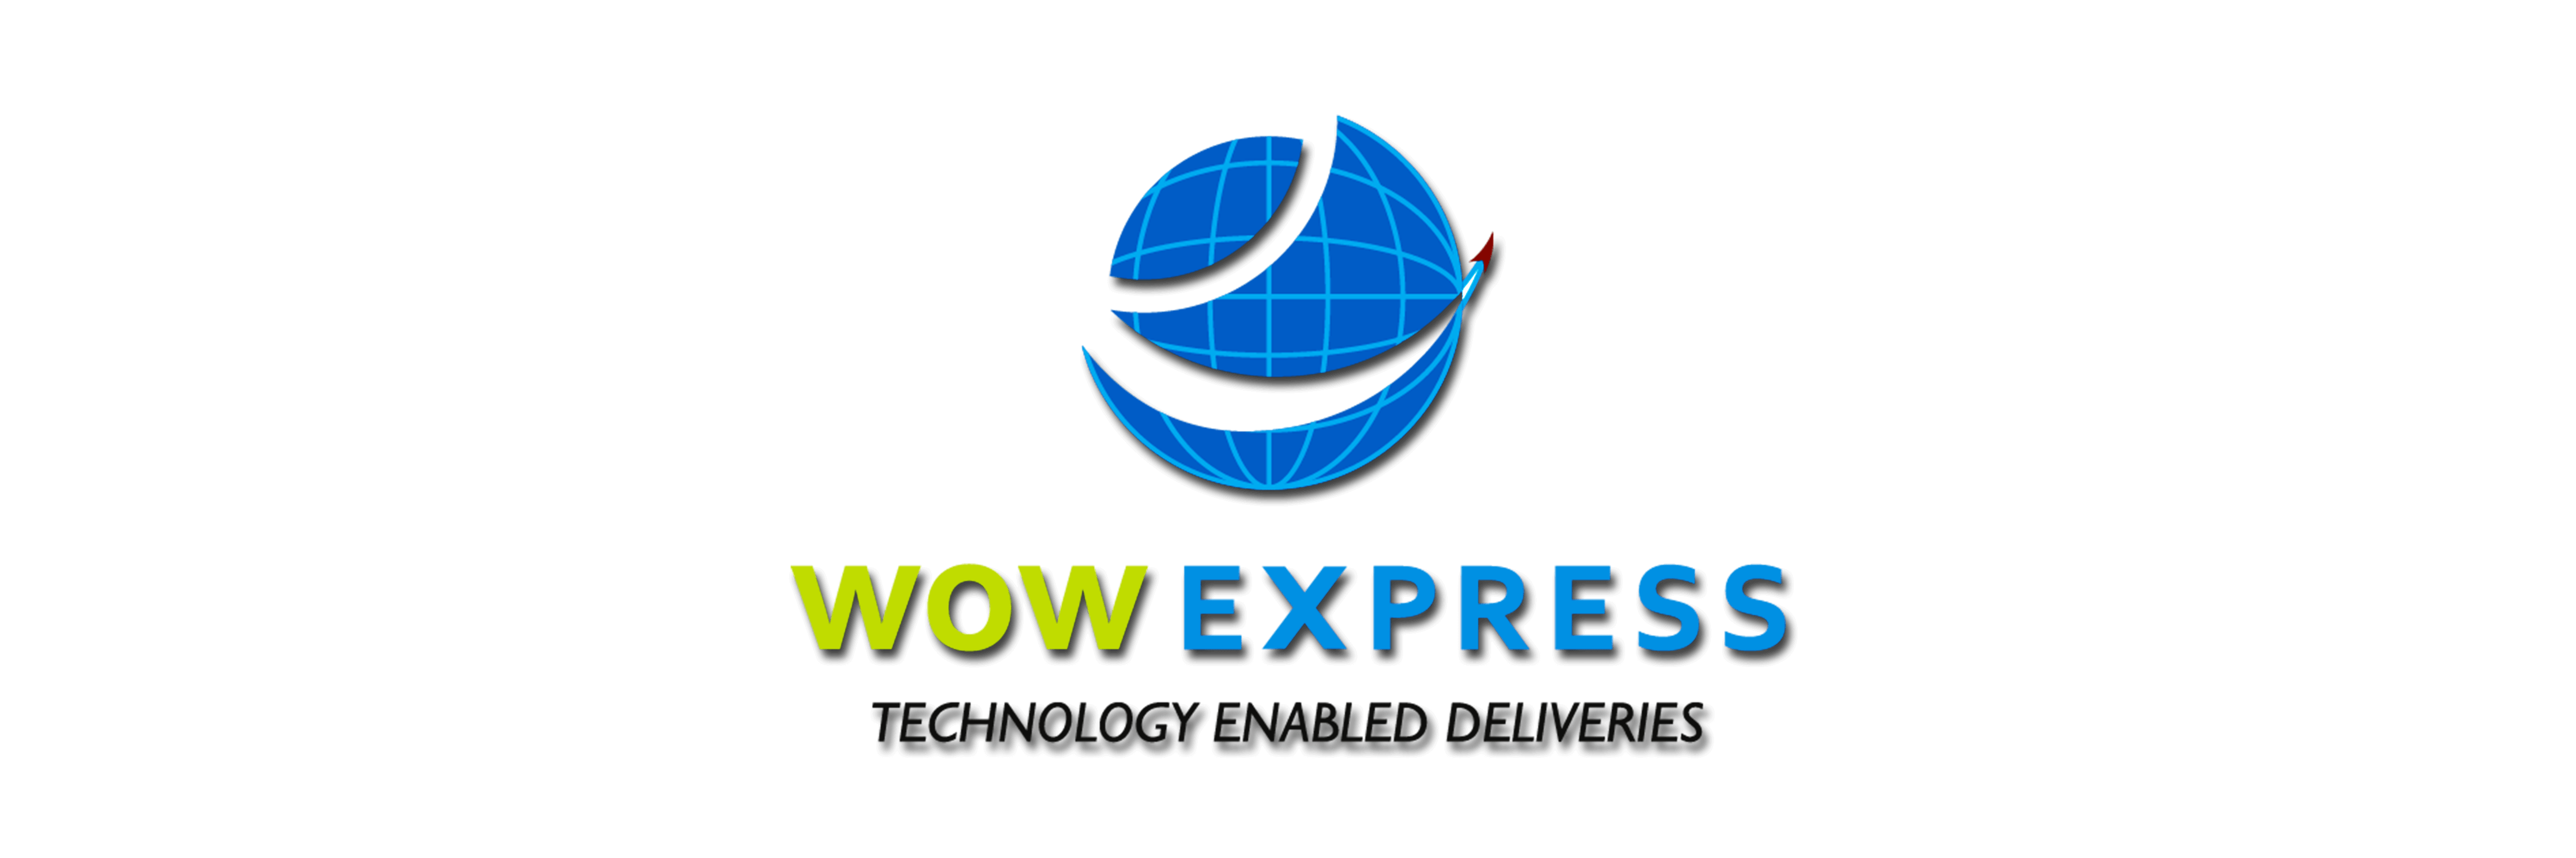 Wow Express | Vamaship Integration